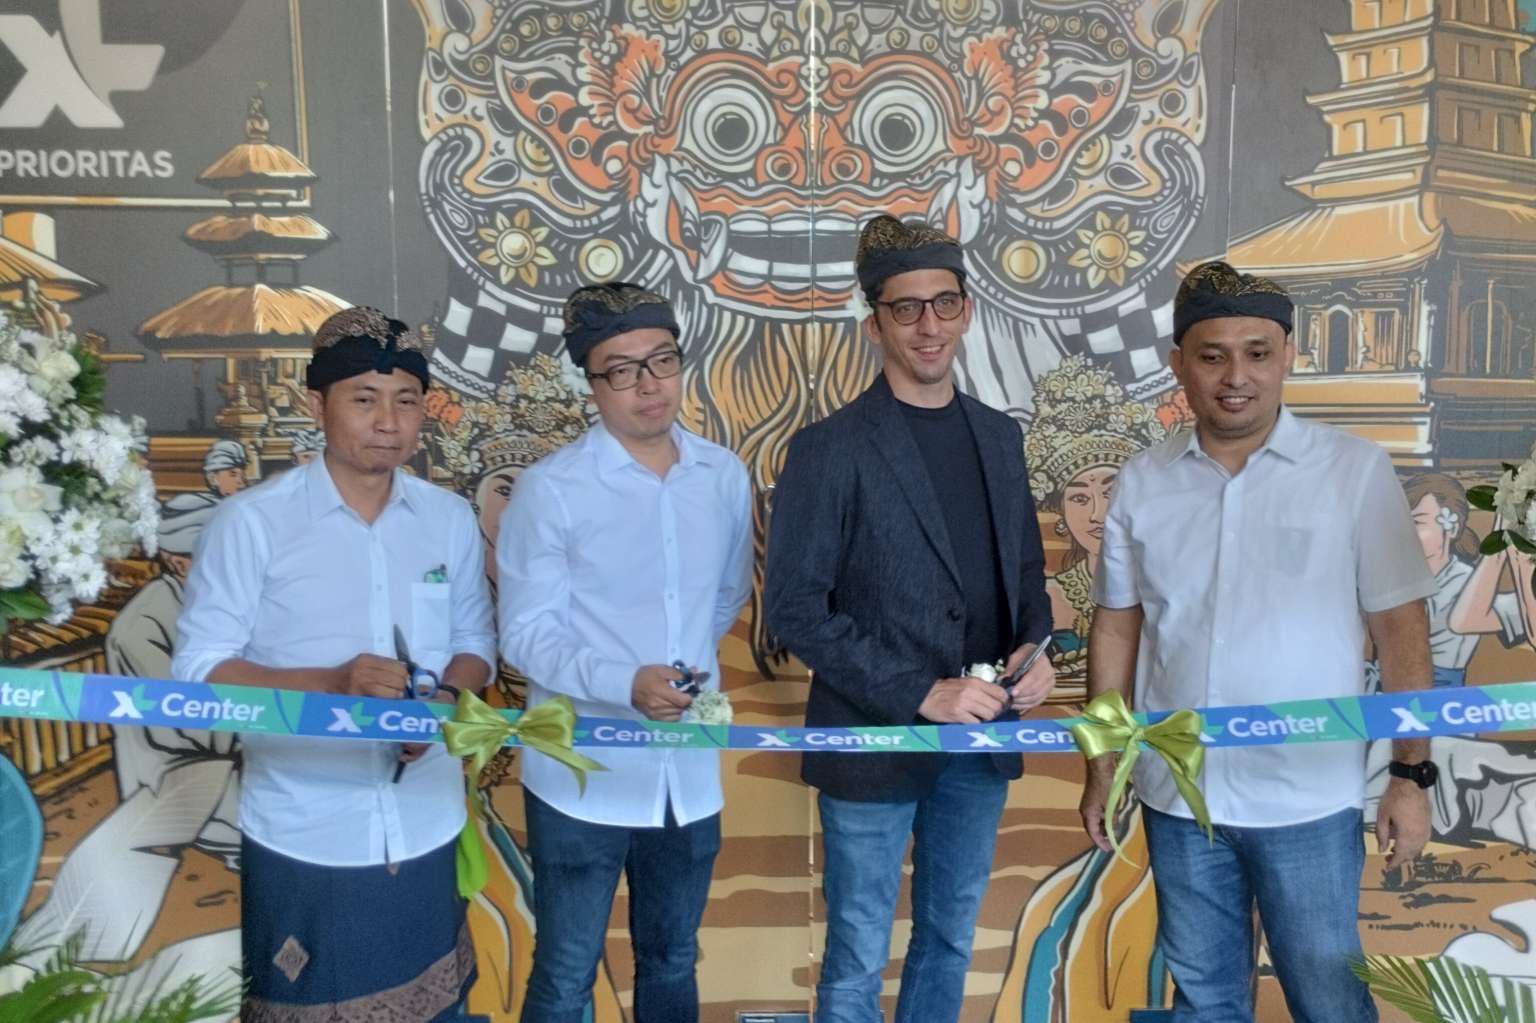 XL PRIORITAS Platinum Berikan Pengalaman Terbaik Pelanggan, Xl Center Bali Bernuansa Liburan Diluncurkan